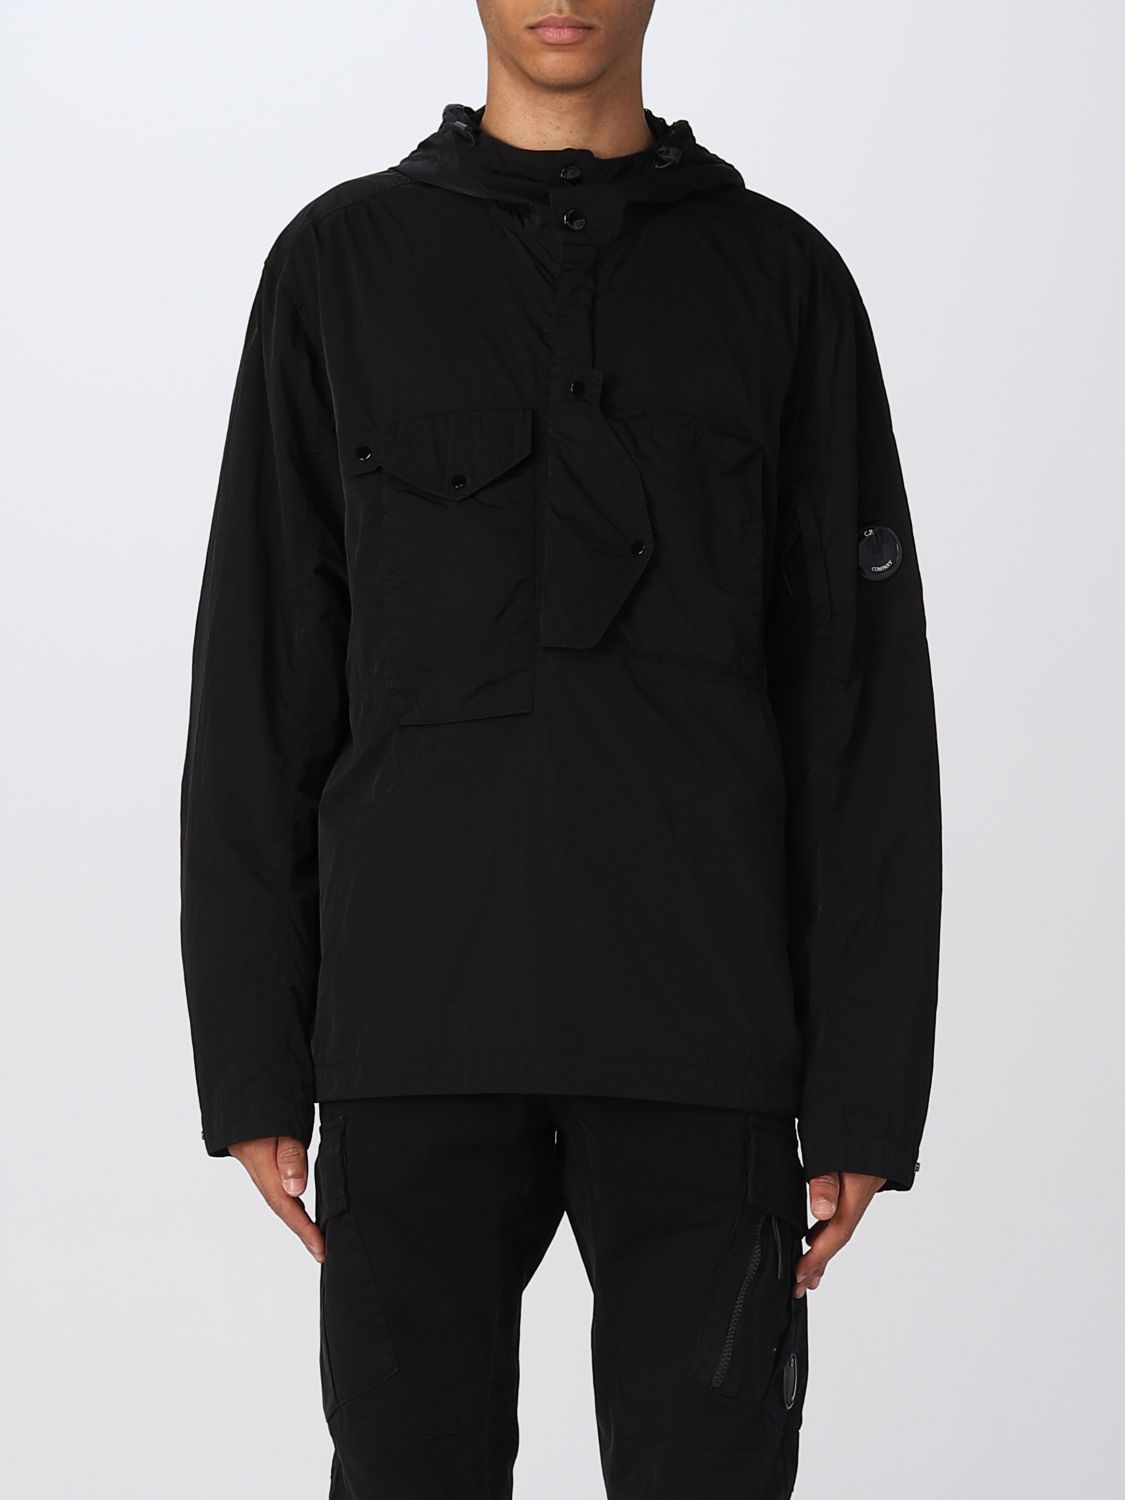 C.P. COMPANY: jacket for man - Black | C.p. Company jacket ...